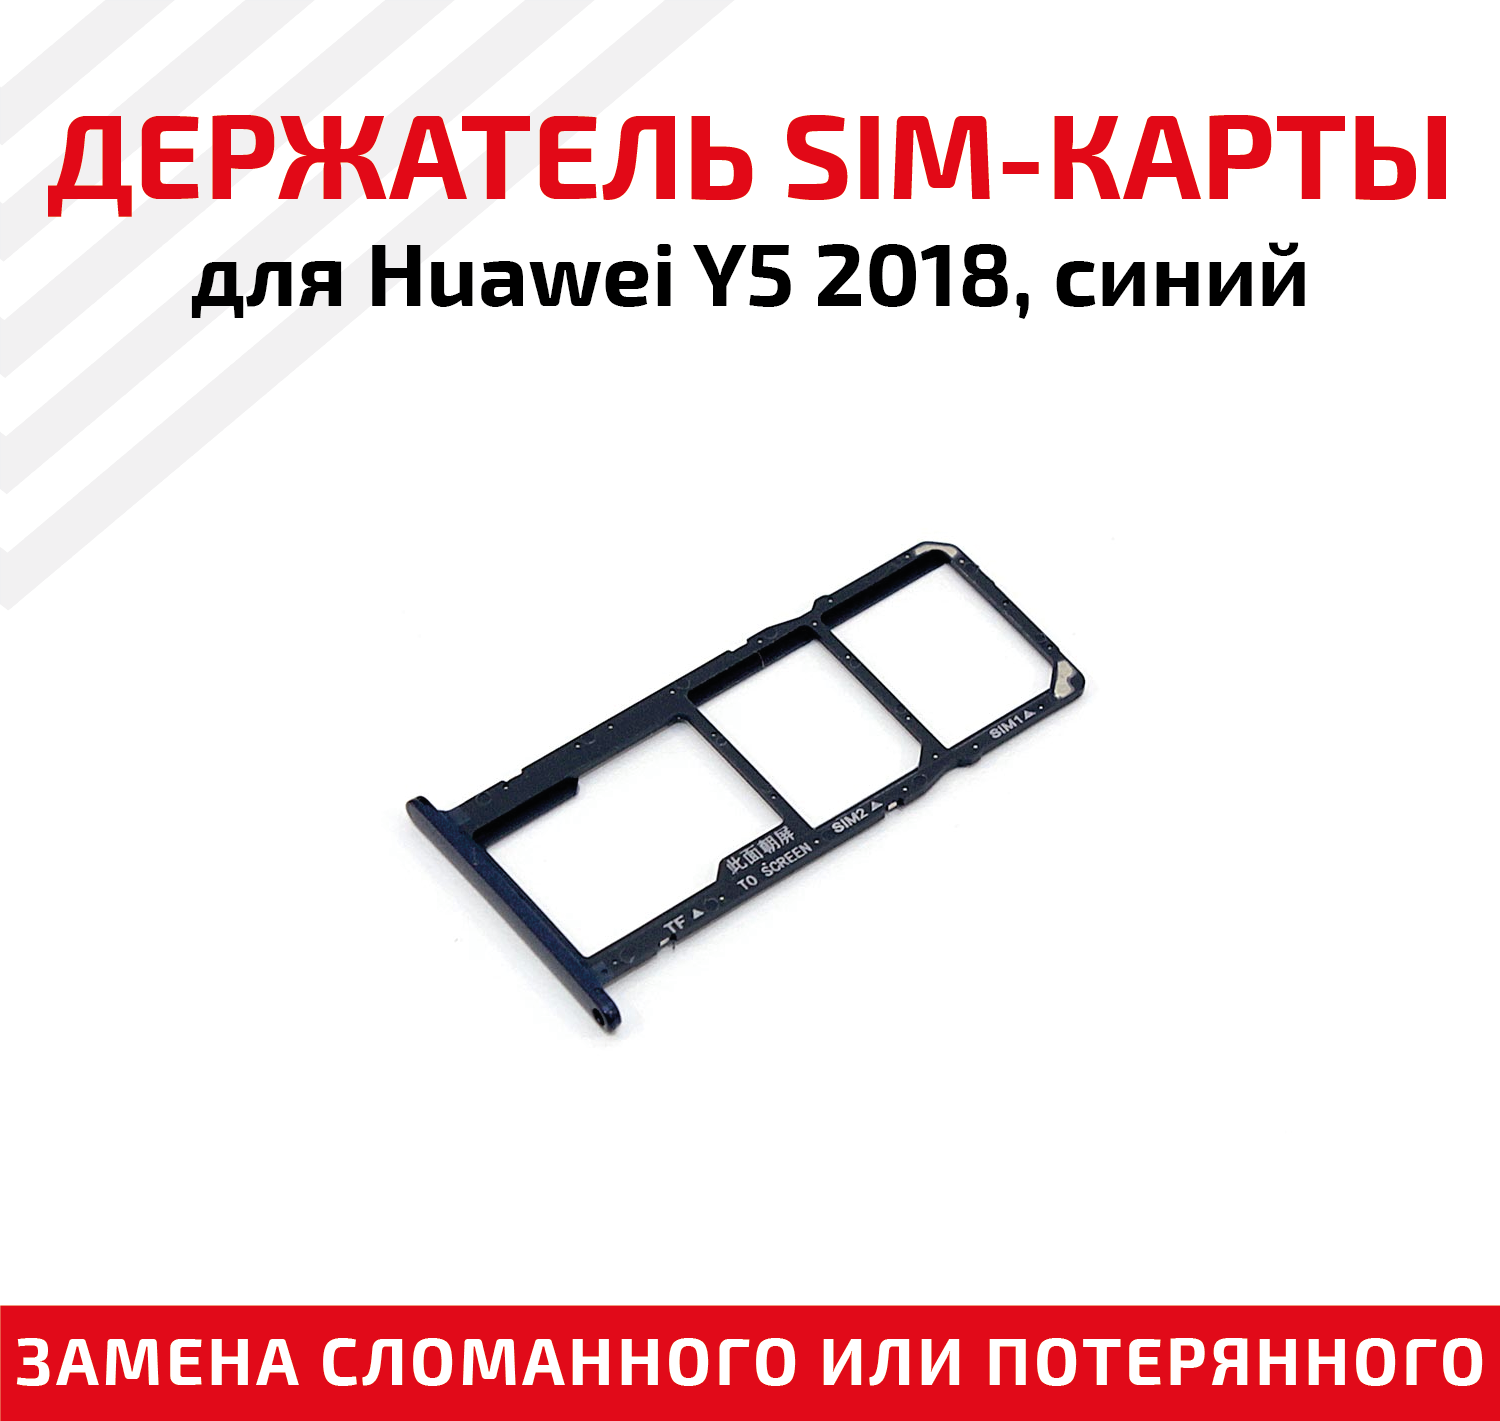 Лоток (держатель, контейнер, слот) SIM-карты для мобильного телефона (смартфона) Huawei Y5 2018, синий